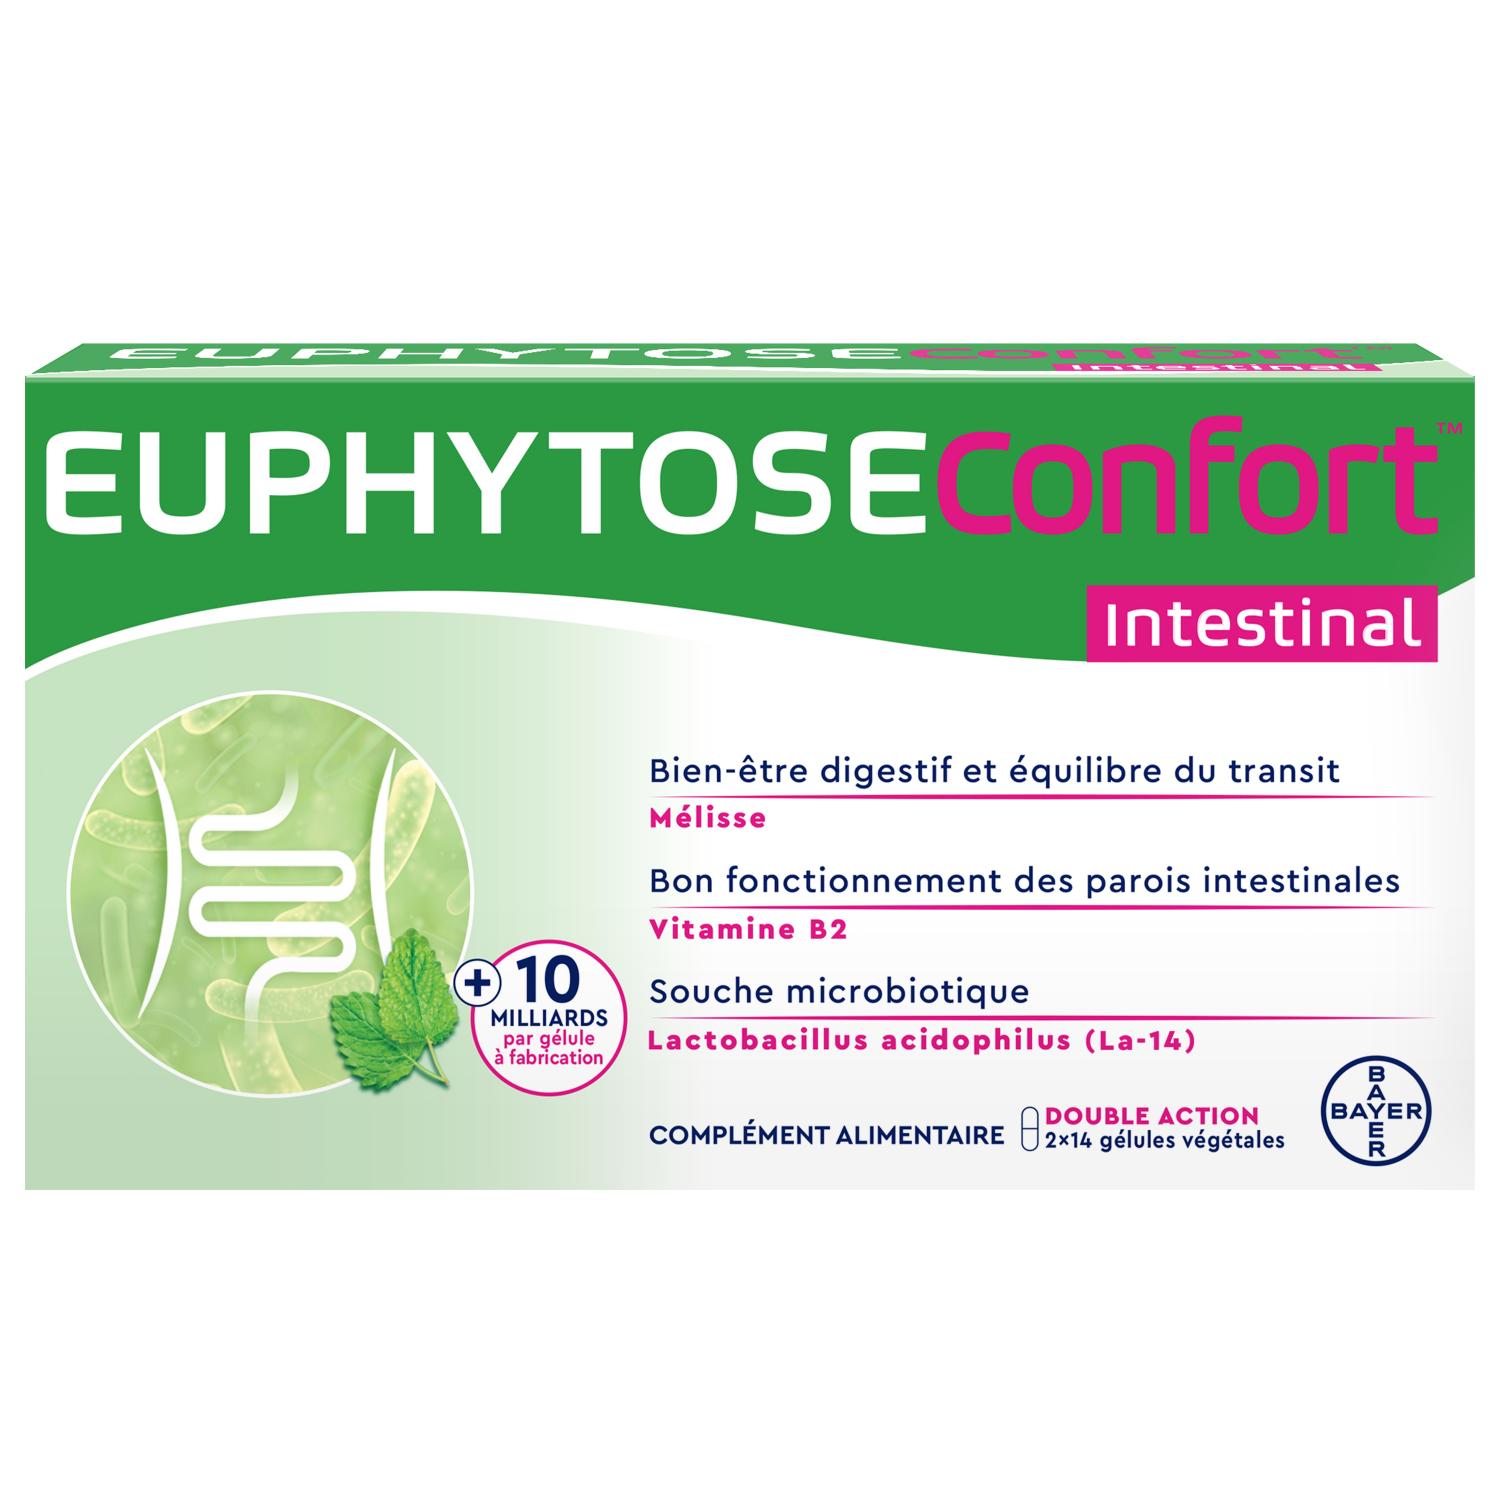 Euphytose Confort Intestinal Mélisse, vitamine B2, 28 gélules végétales